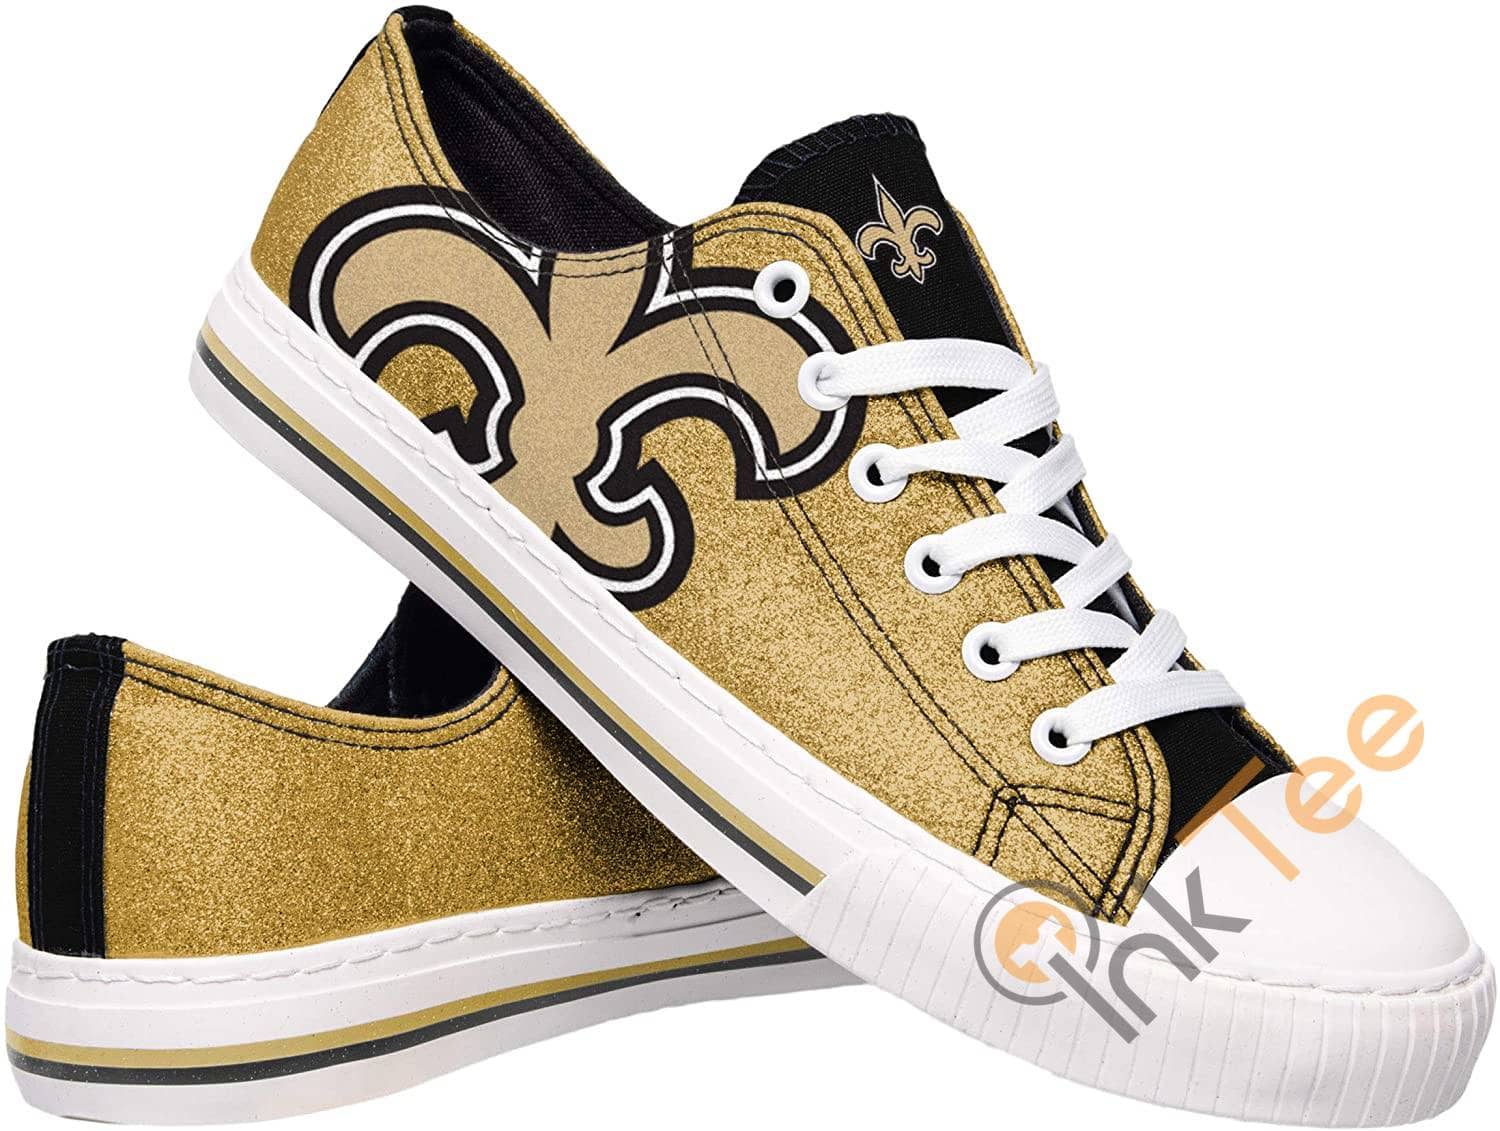 Nfl New Orleans Saints Team Low Top Sneakers